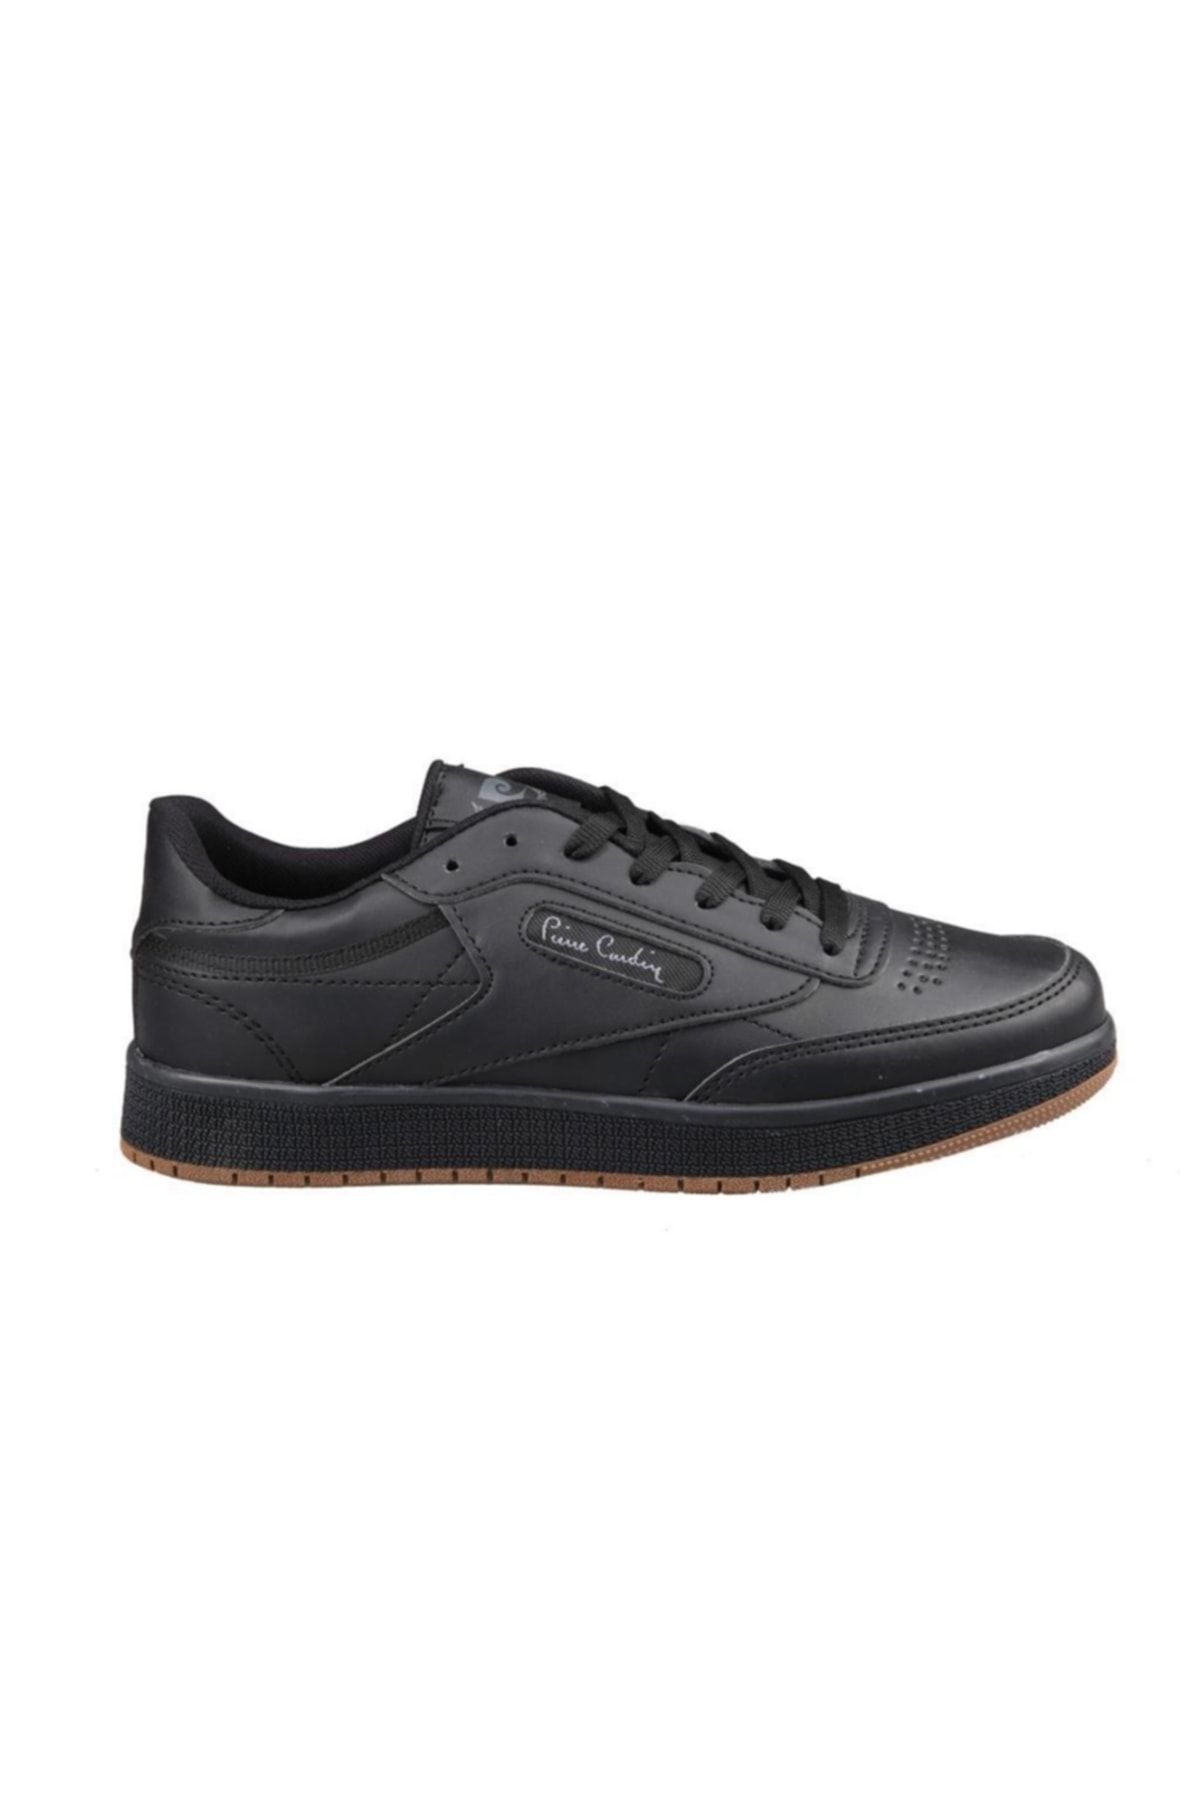 Pierre Cardin Pc-30813 Siyah Erkek Sneakers